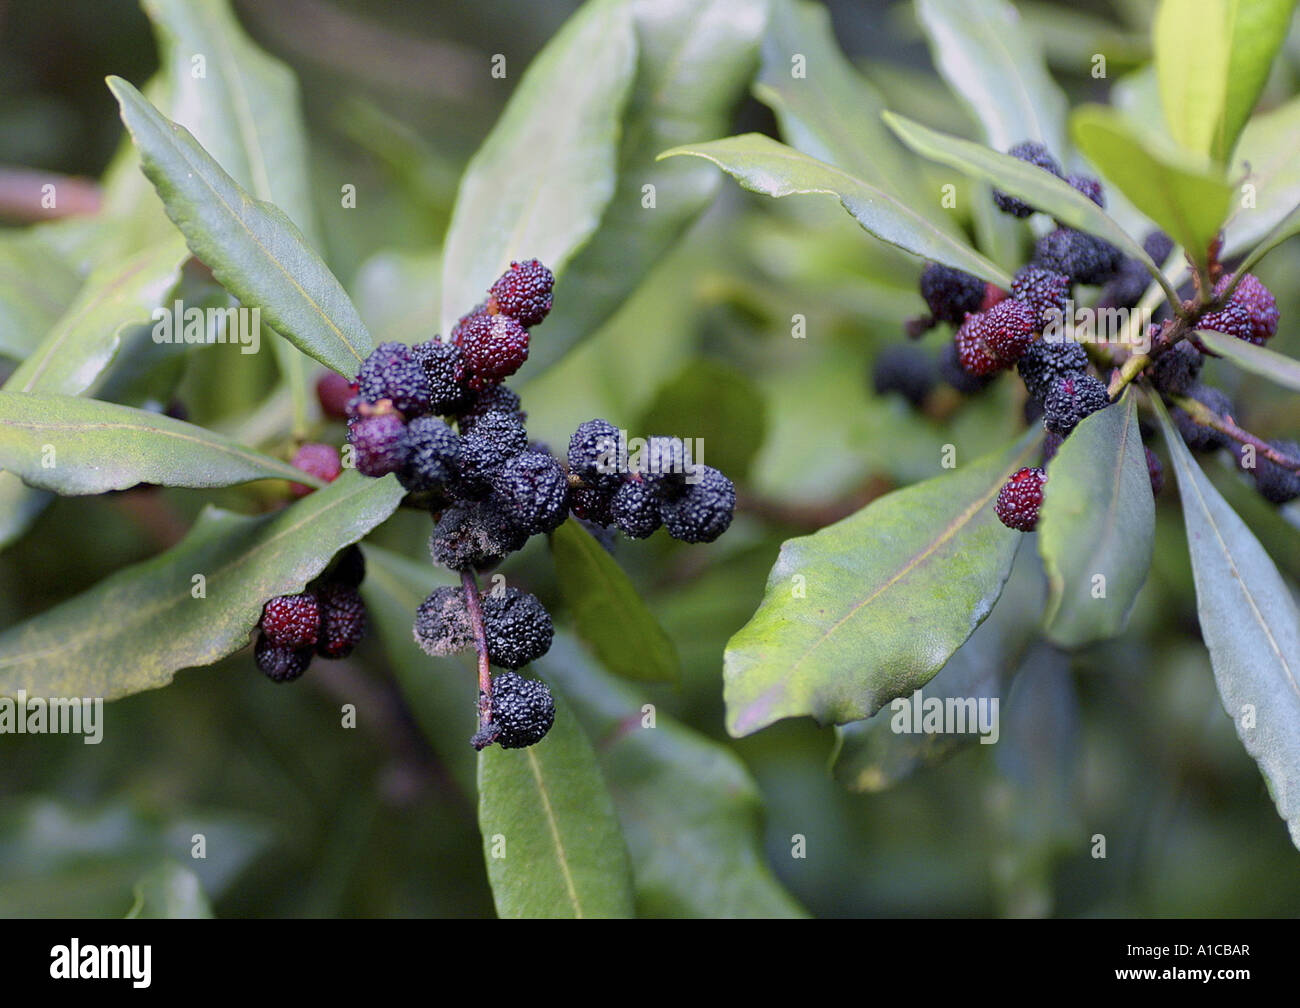 firetree, firebush, fayatree, candleberry myrtle, fayatree (Myrica faya, Morella faya), twigs with fruits, Spain, Canary, Tener Stock Photo